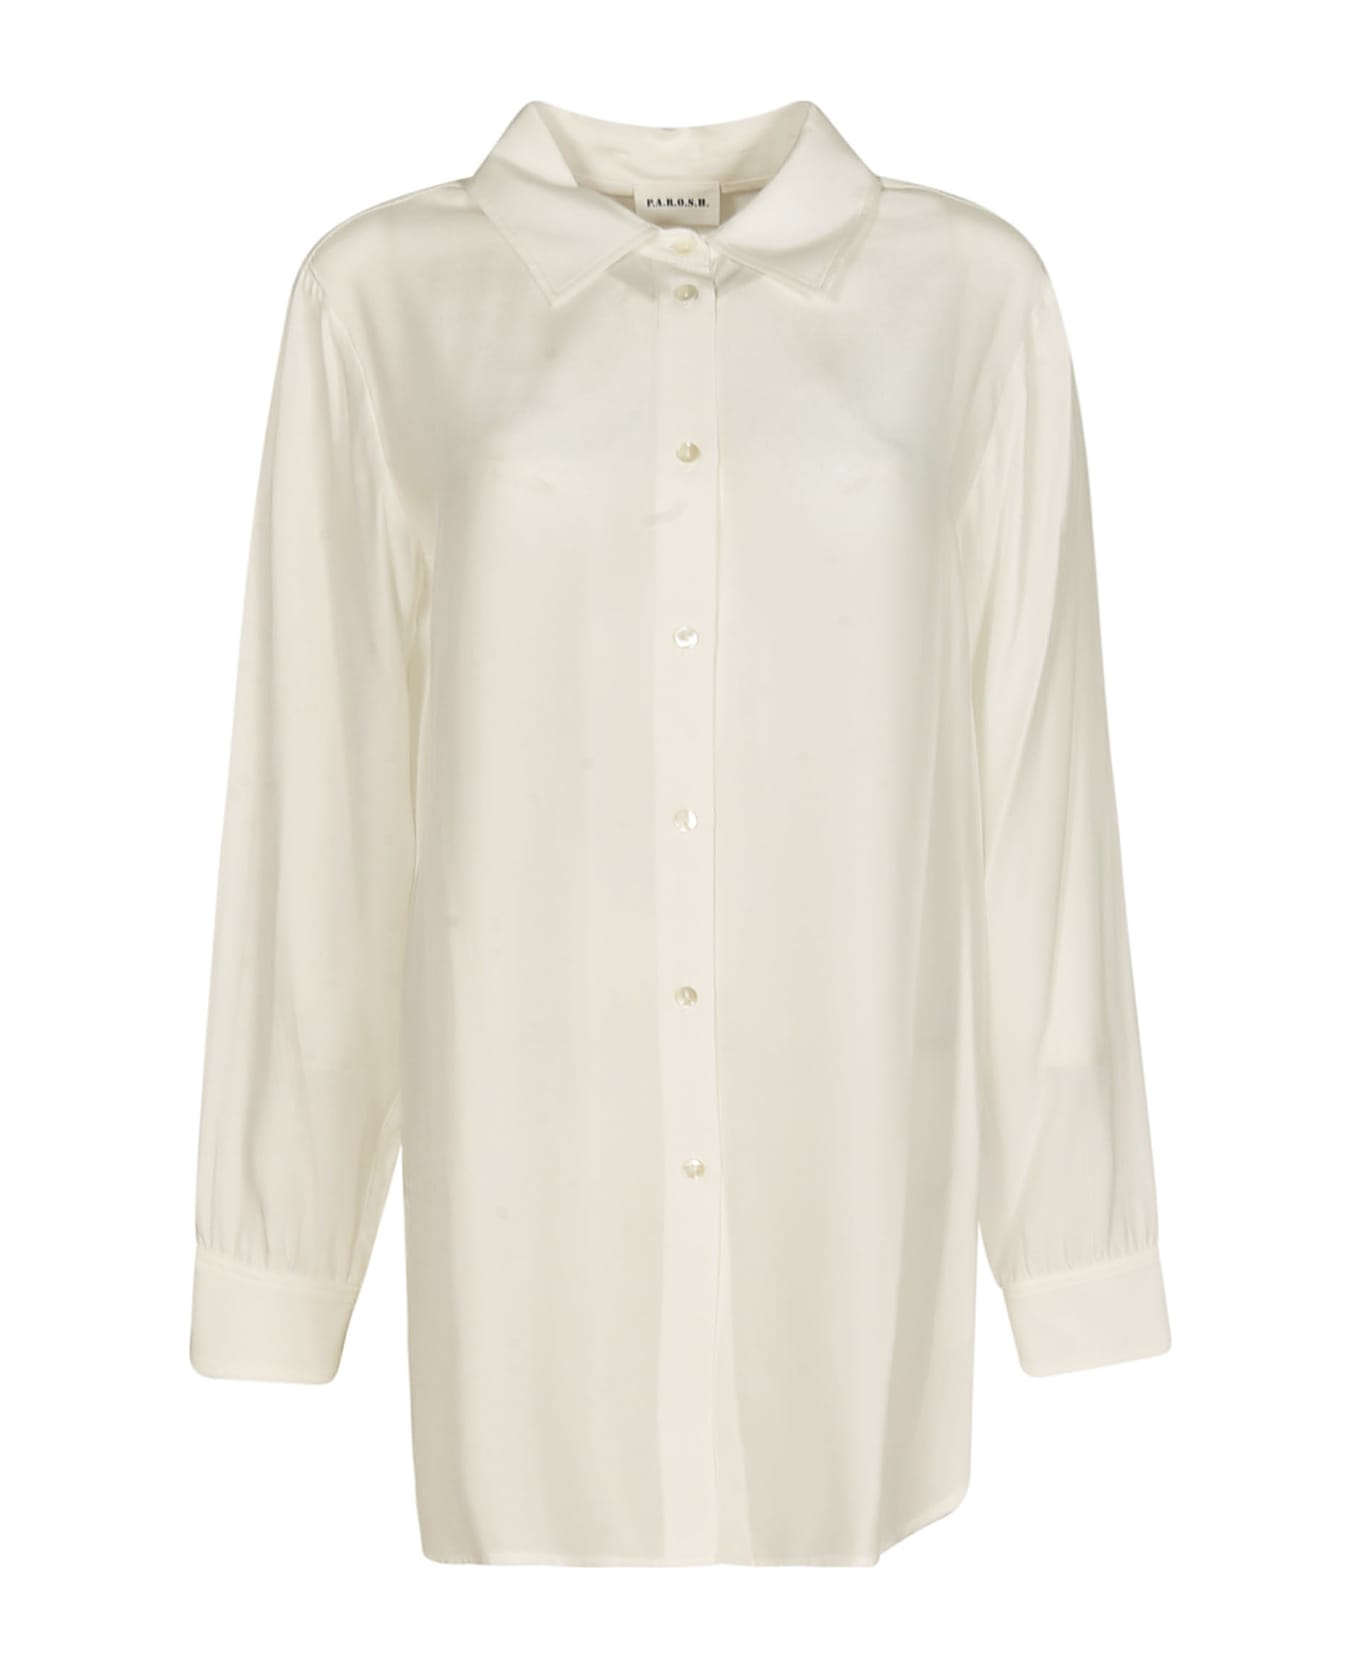 Parosh Long-sleeved Shirt - Cream